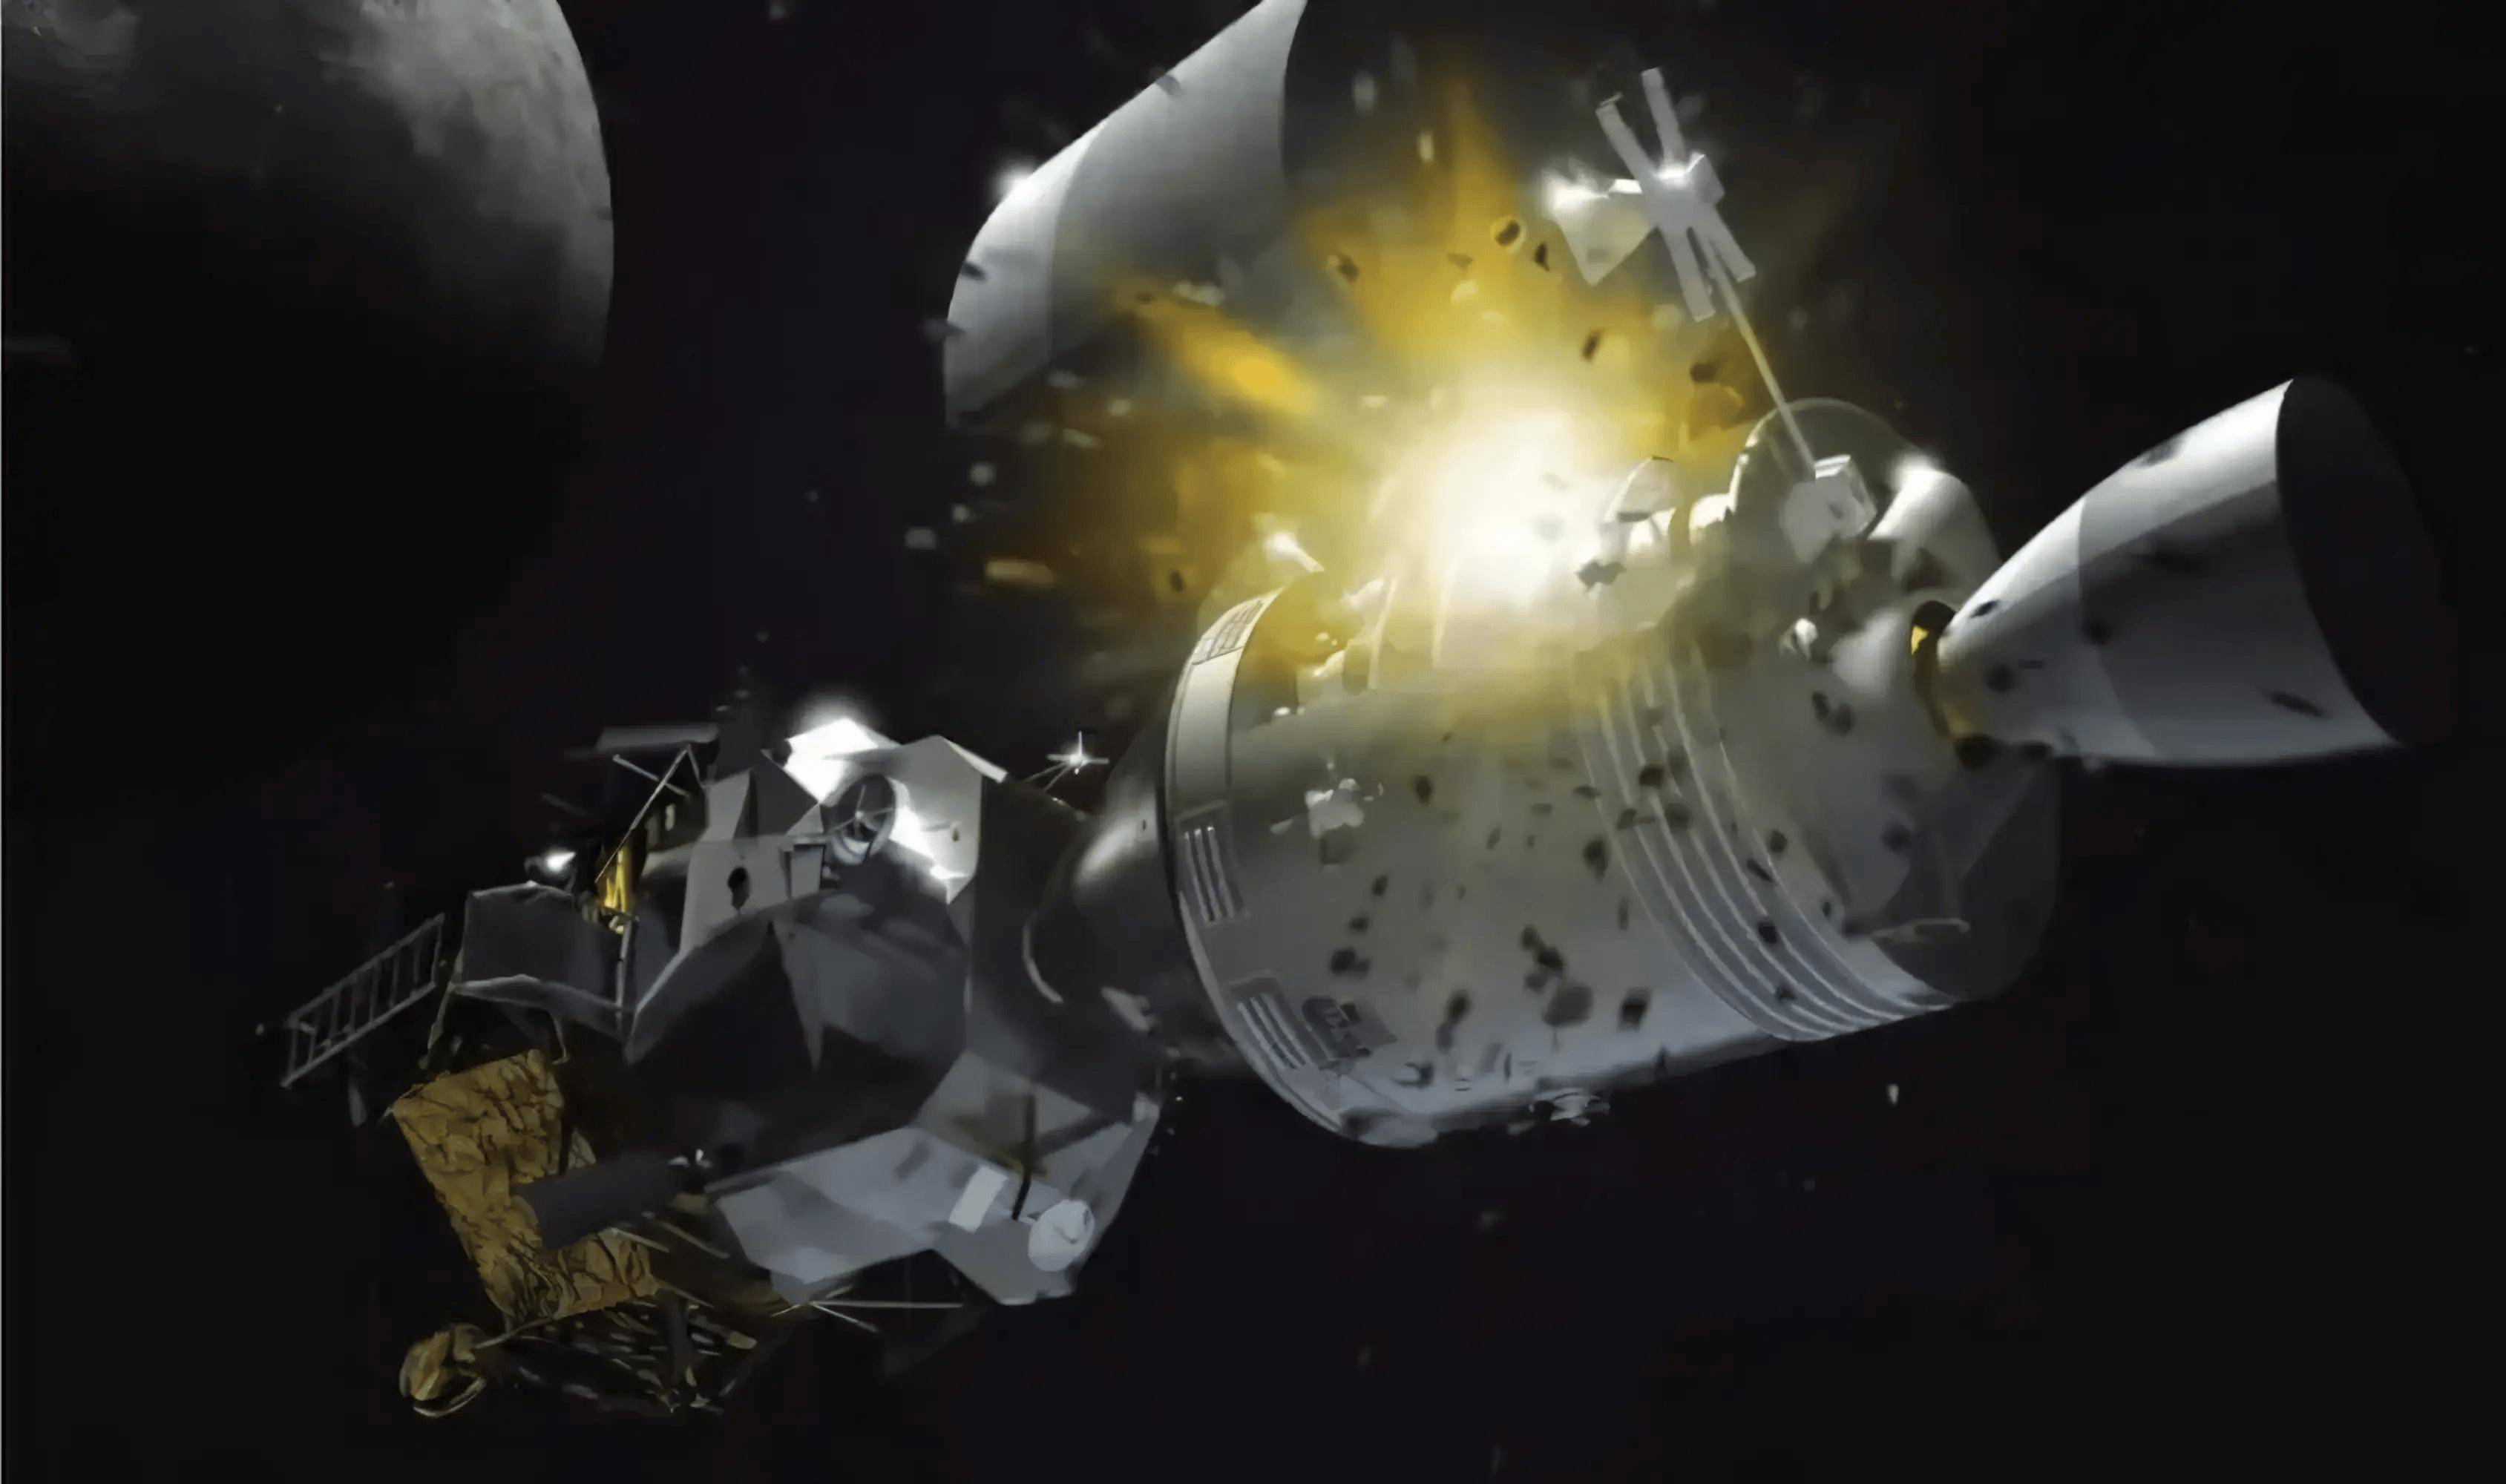 嫦娥六号登月,要先保护自己:我们可以避免,美国探测器的覆辙